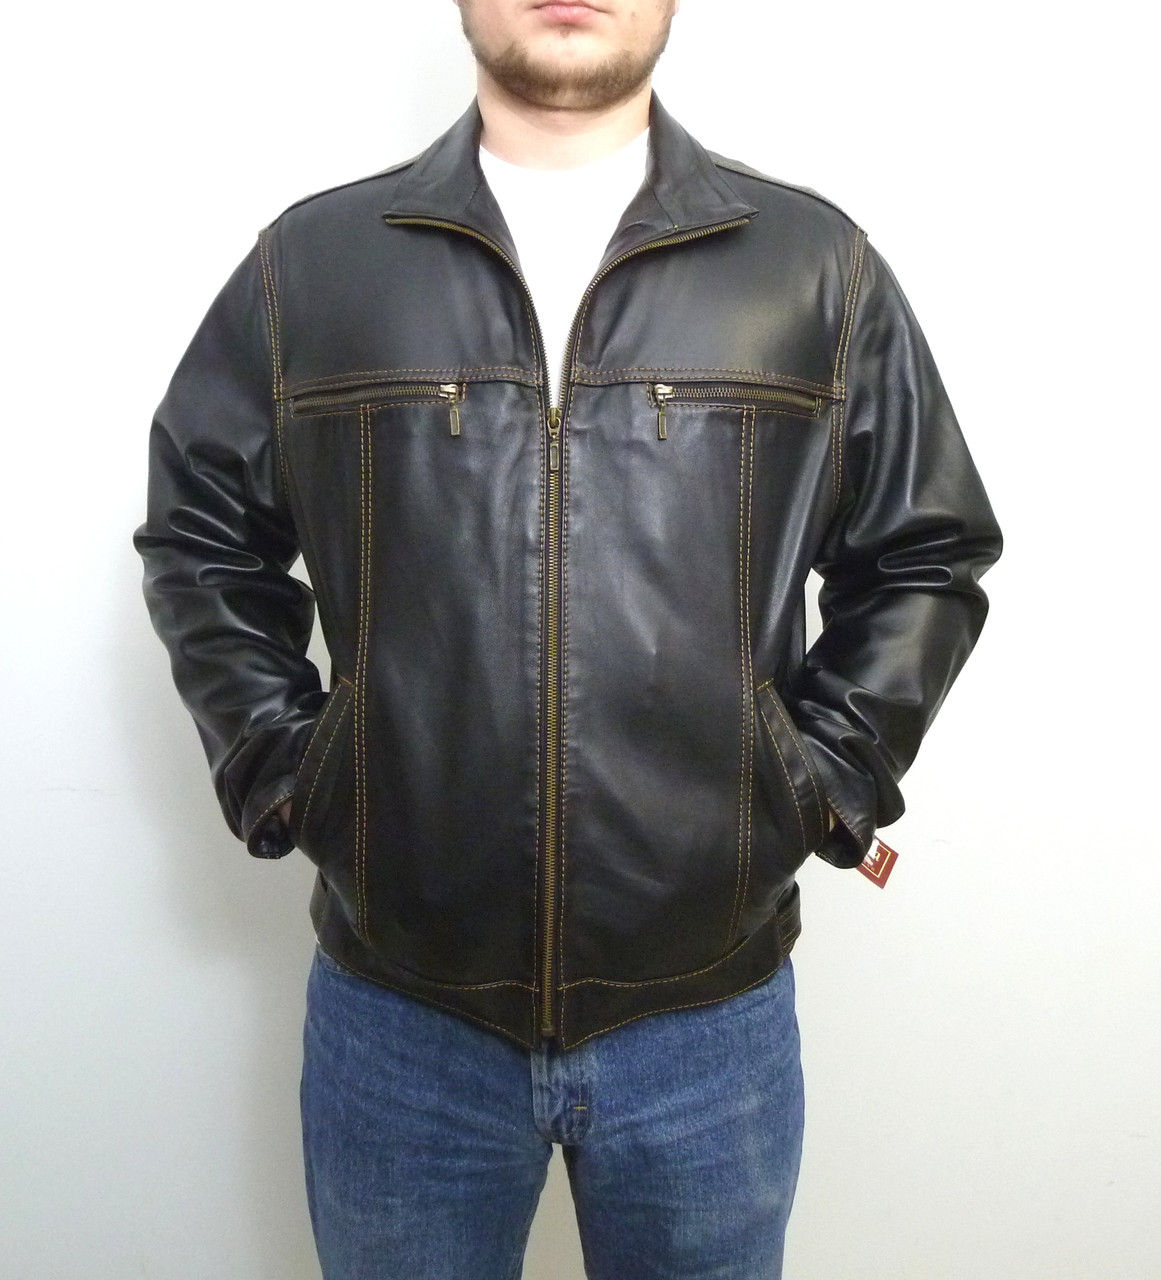 Чоловіча куртка Elegance з натуральної шкіри модель JEANS розмір XXL